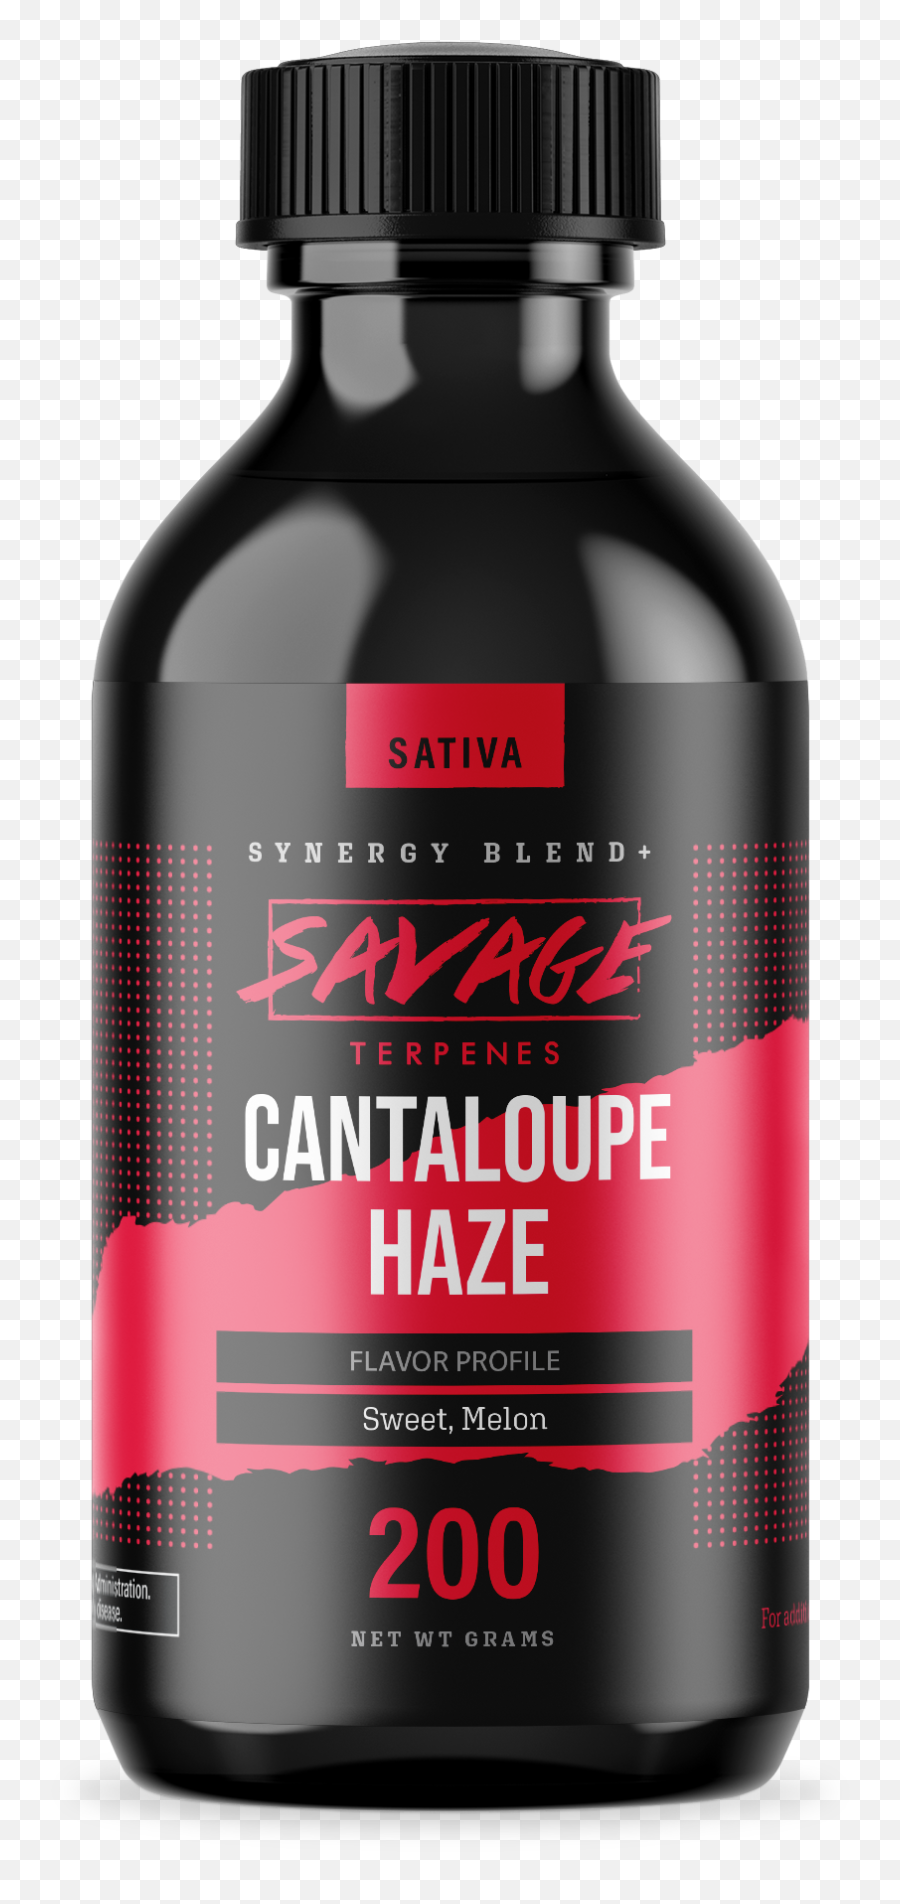 Cantaloupe Haze Terpenes - Synergy Blend Terpene Png,Cantaloupe Png